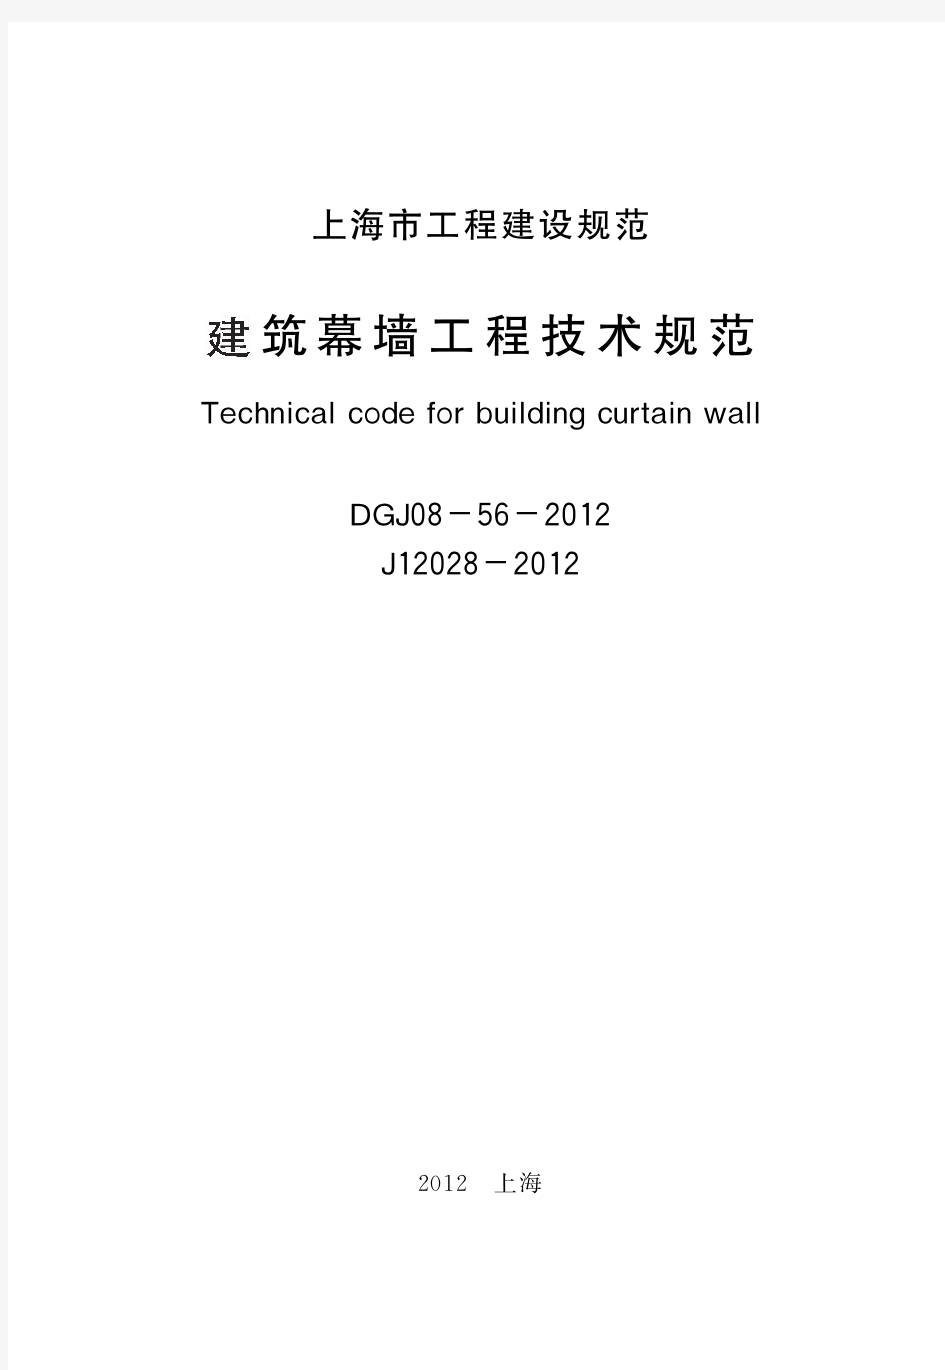 上海市建筑幕墙工程技术规范DGJ 